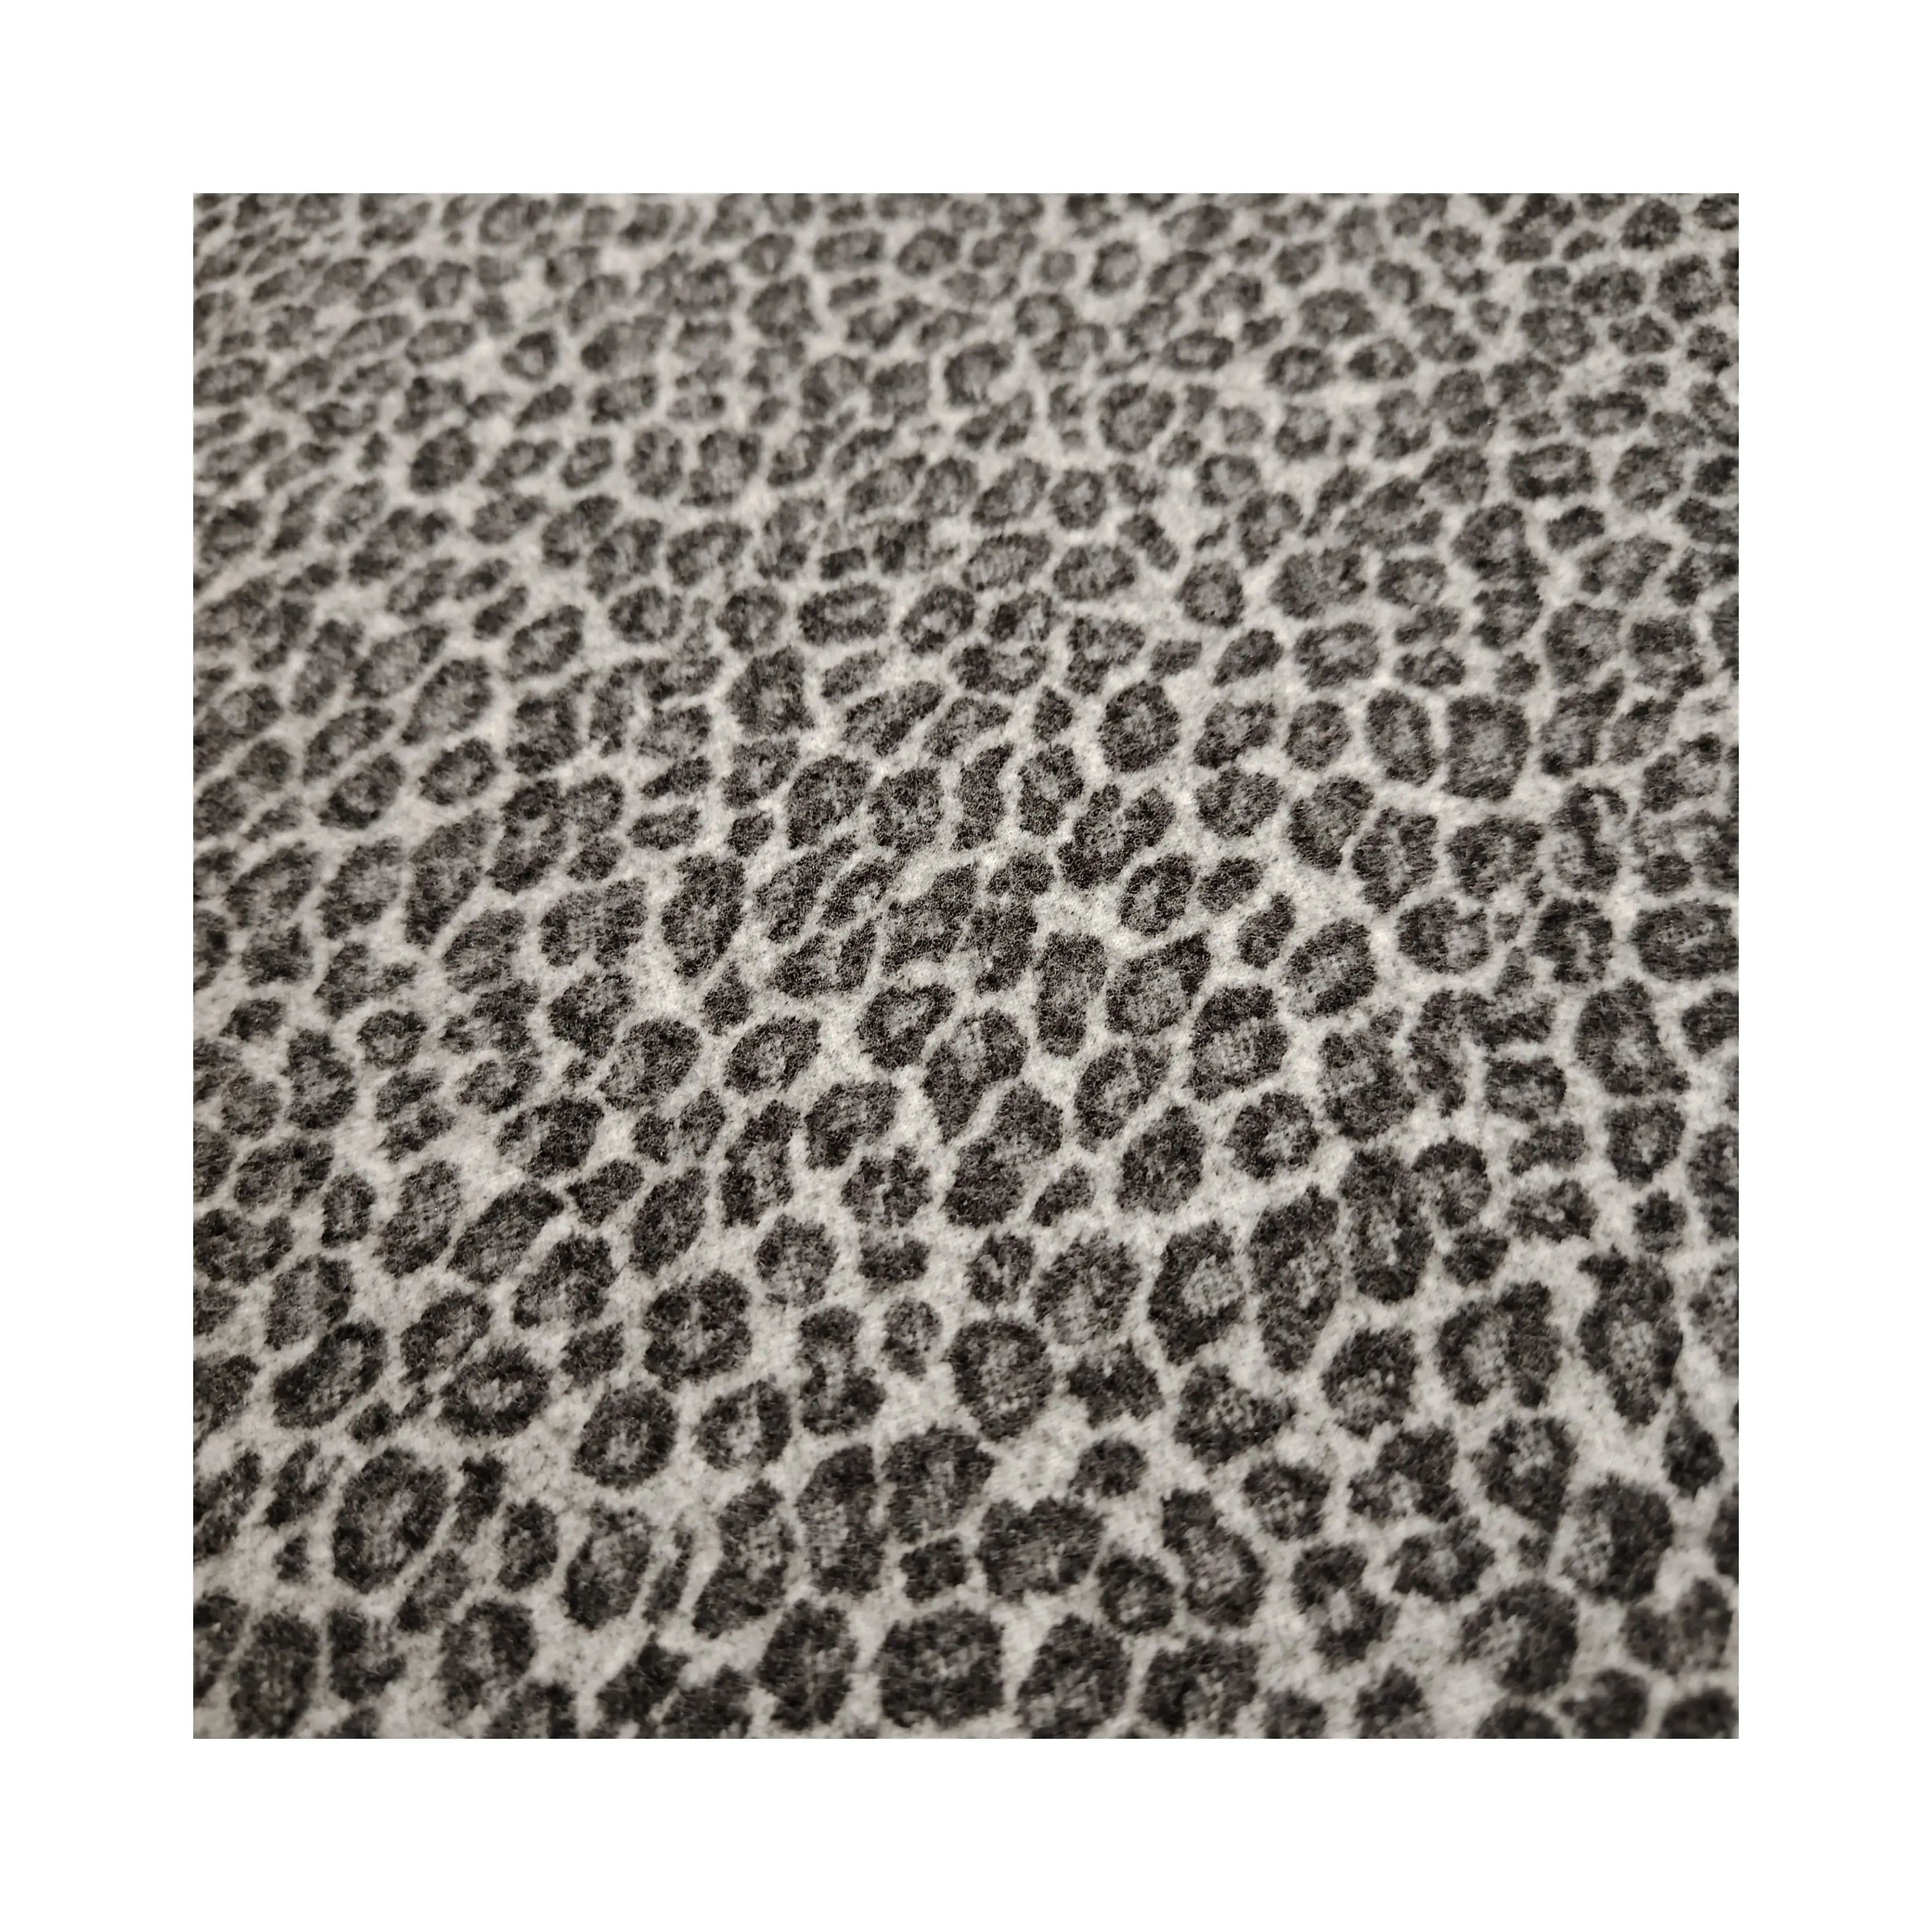 Calças retrô americanas com estampa de leopardo, calças casuais e tecidos de saia, outono e inverno